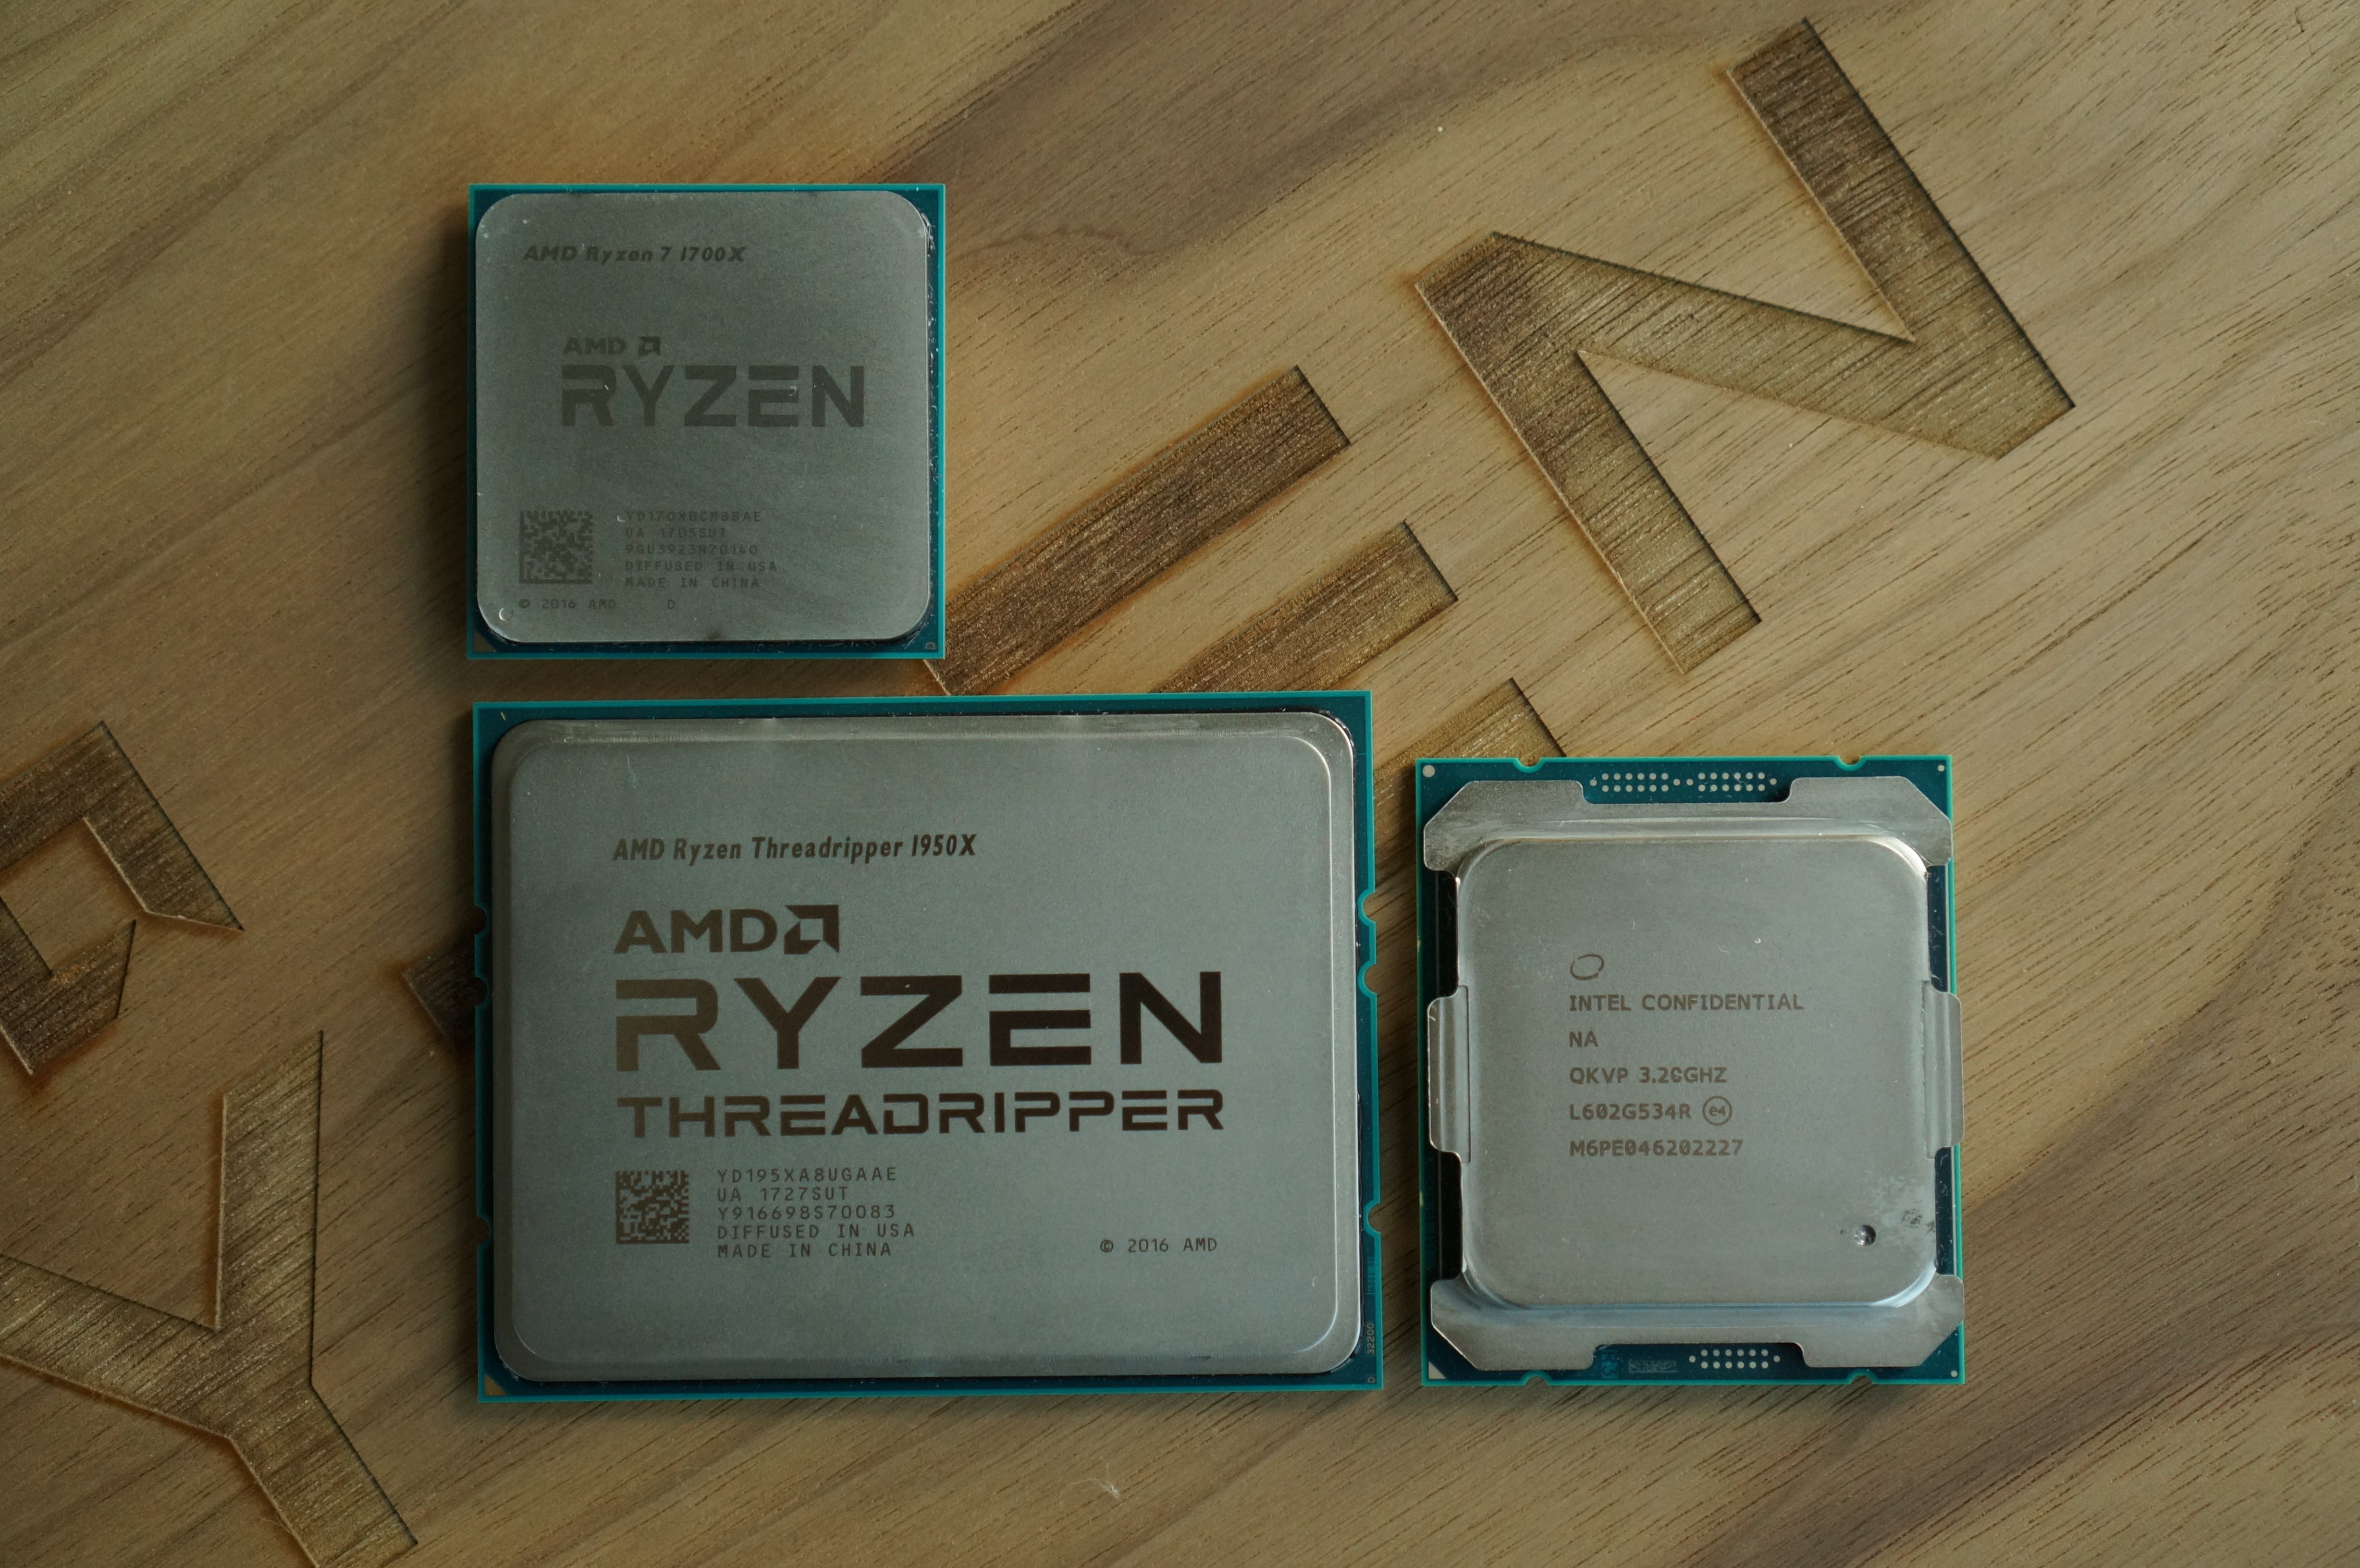 Ryzen Threadripper review: We test AMD's monster 1950X CPU ...